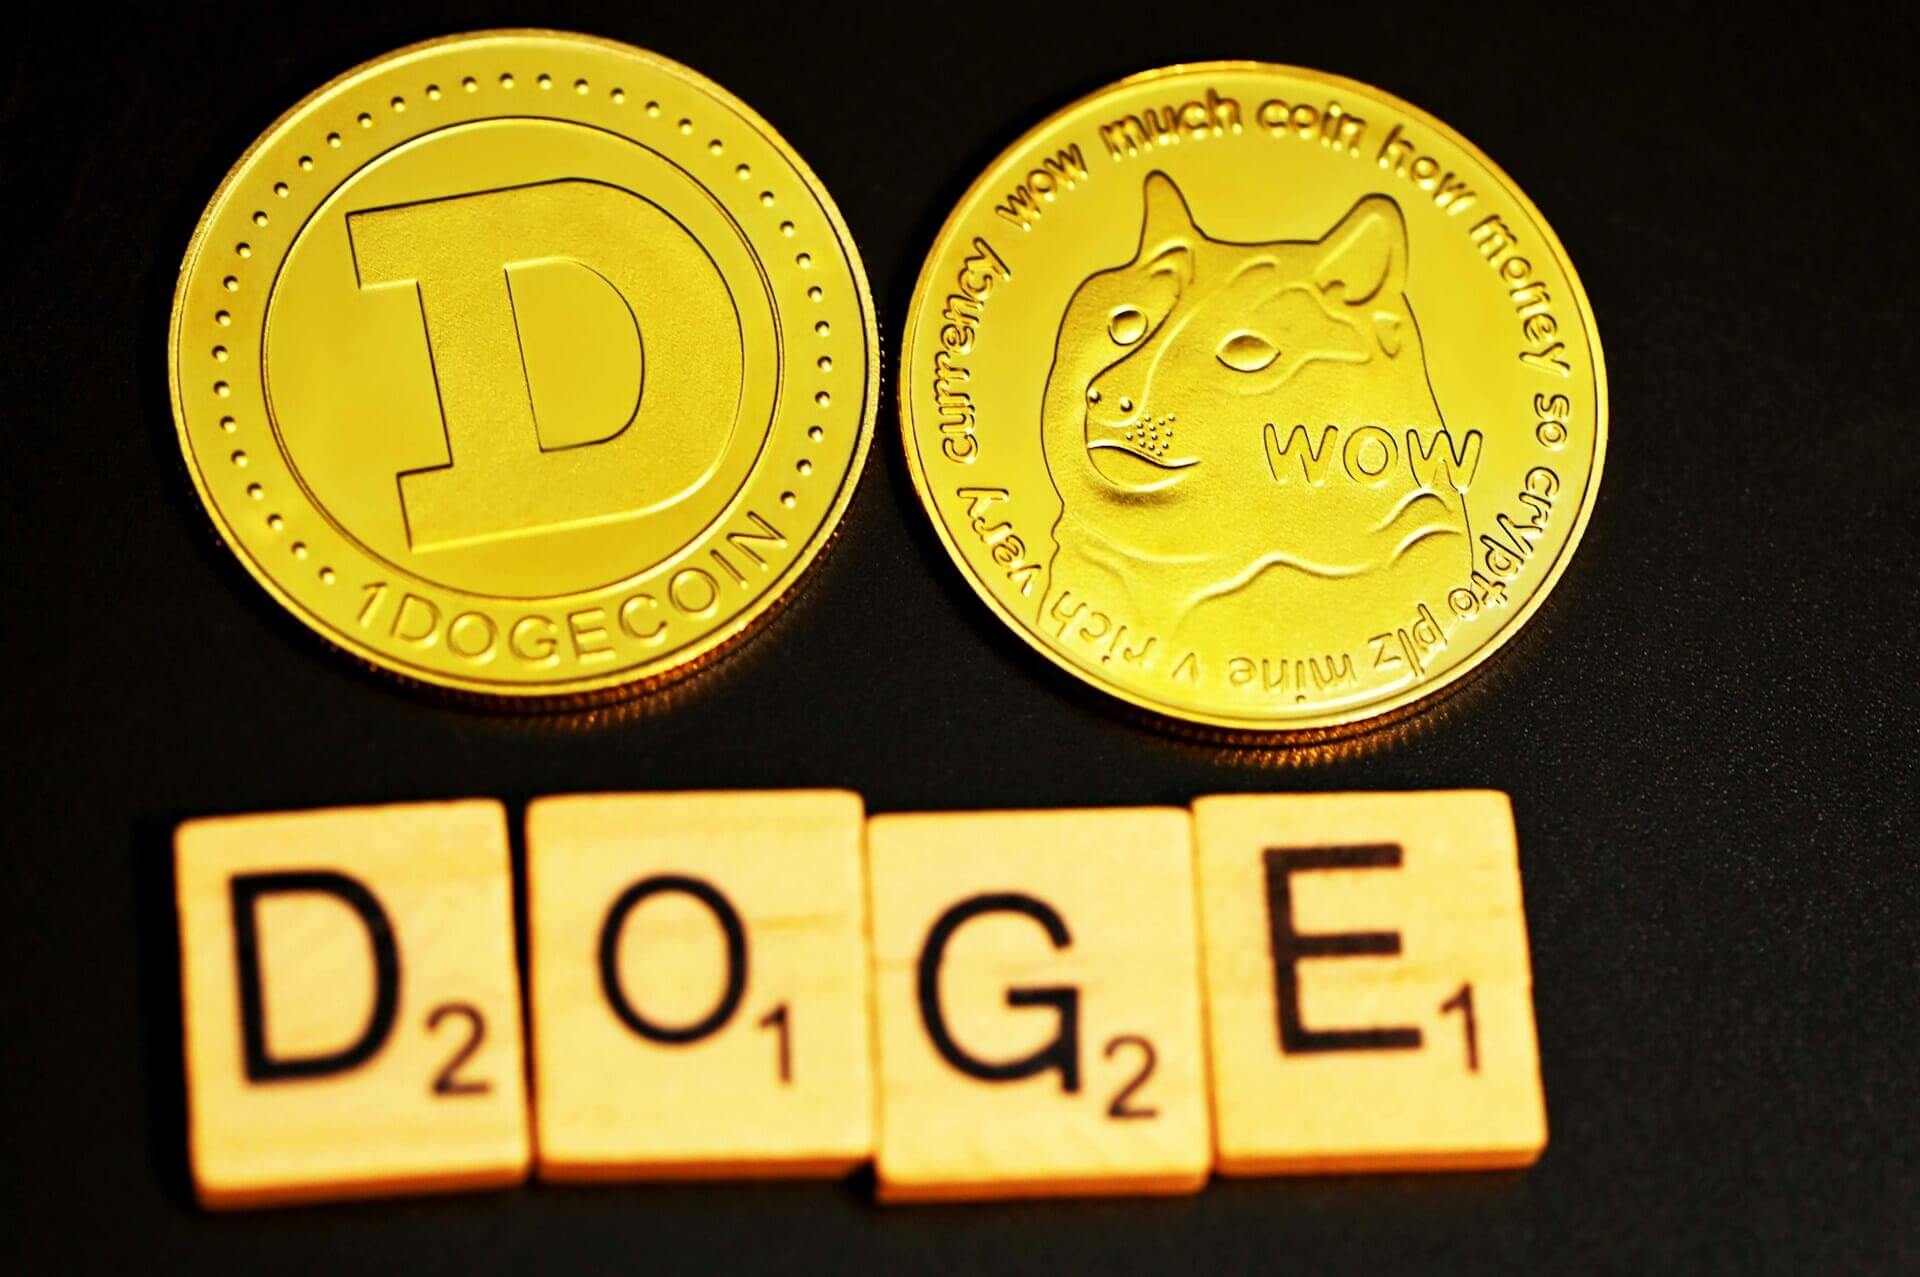 ドージコインと「DOGE」の文字。